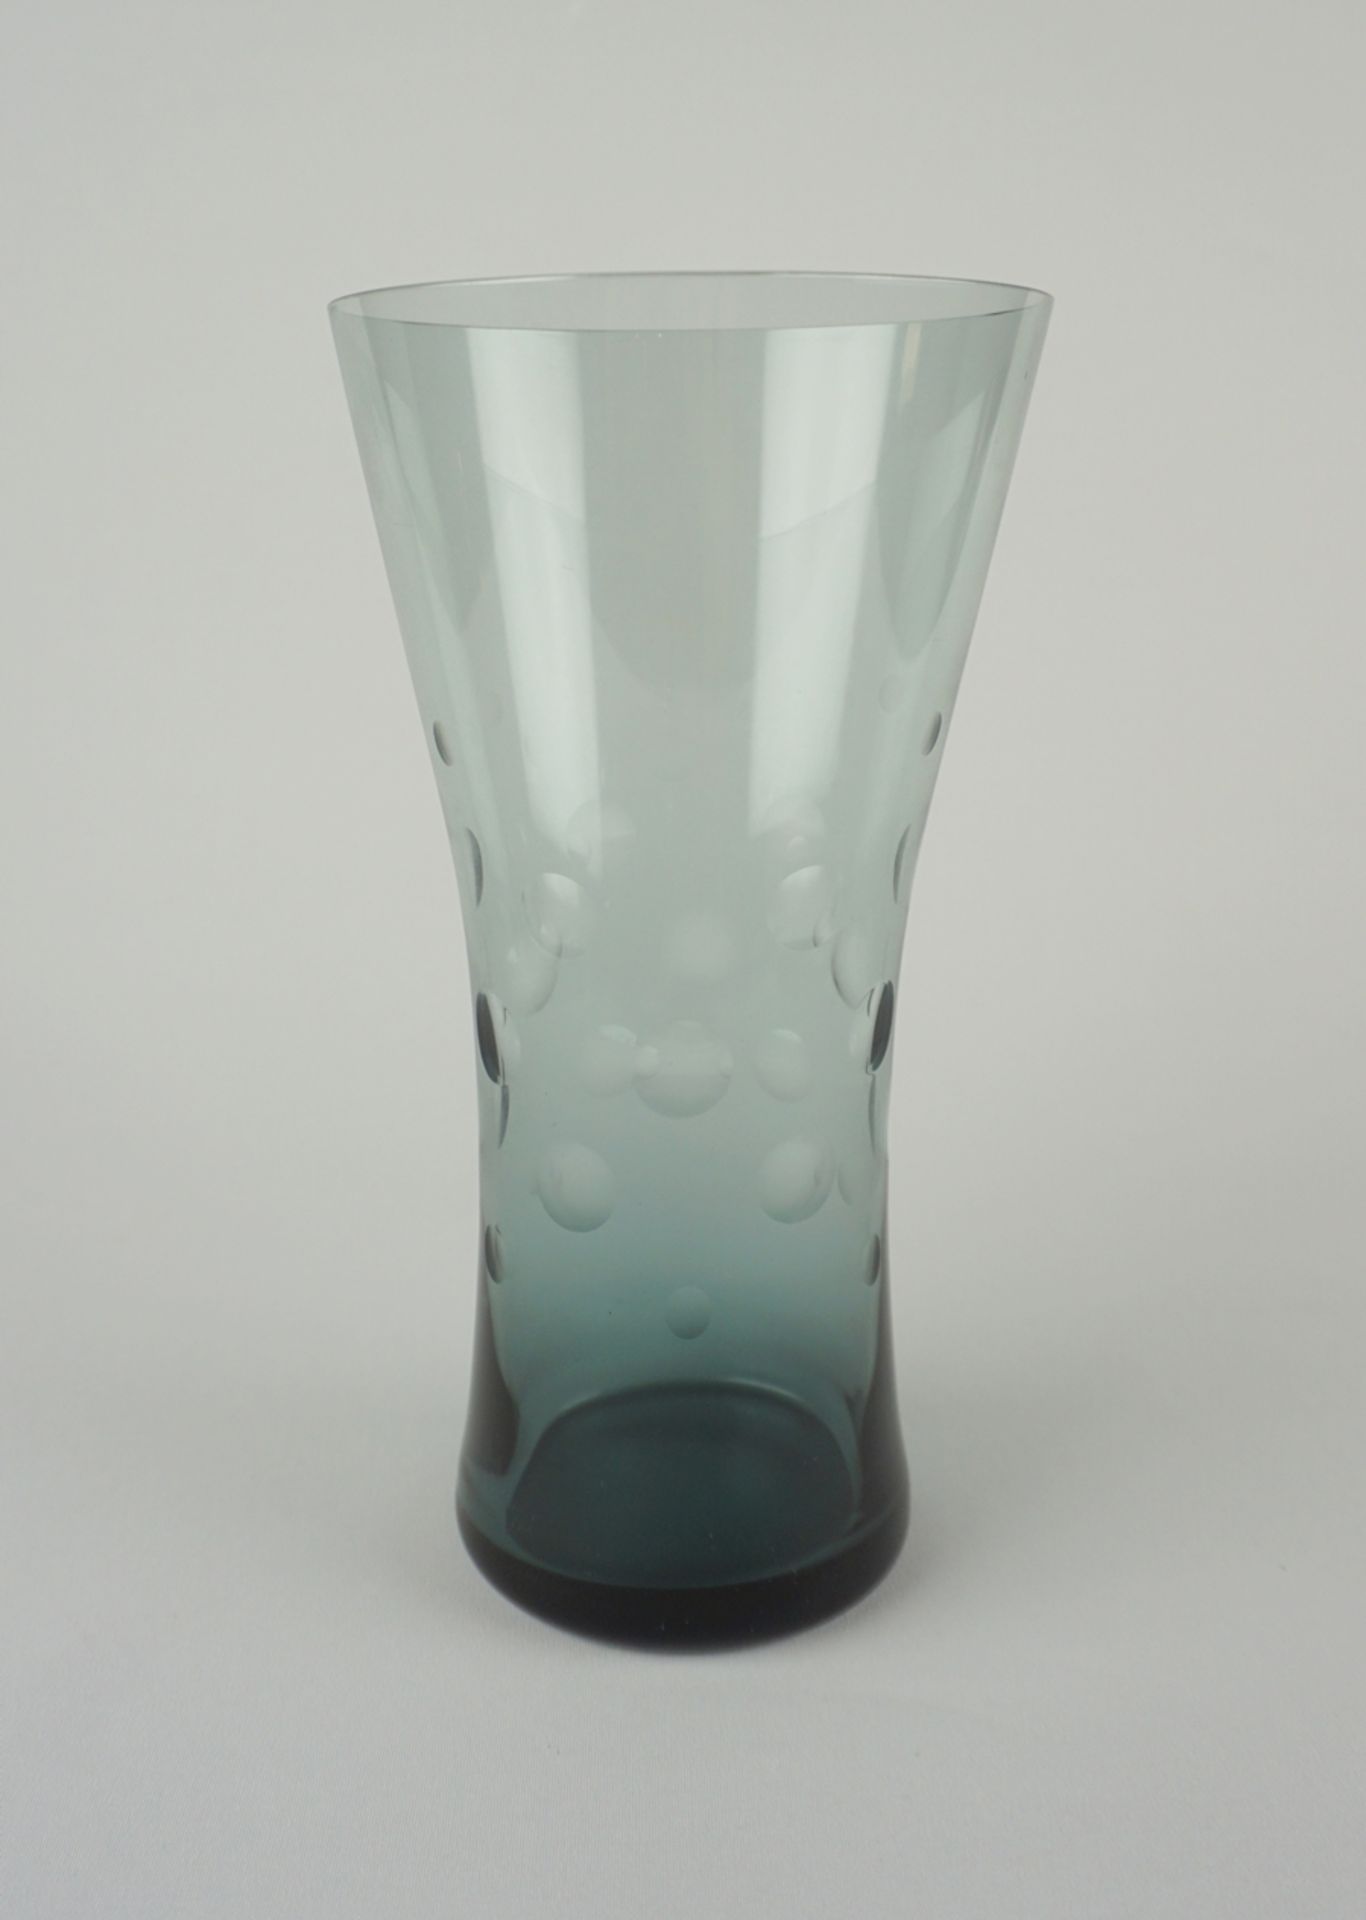 Turmalin-Vase mit Punktschliff, Wilhelm Wagenfeld für WMF, 1960er Jahre - Image 2 of 4